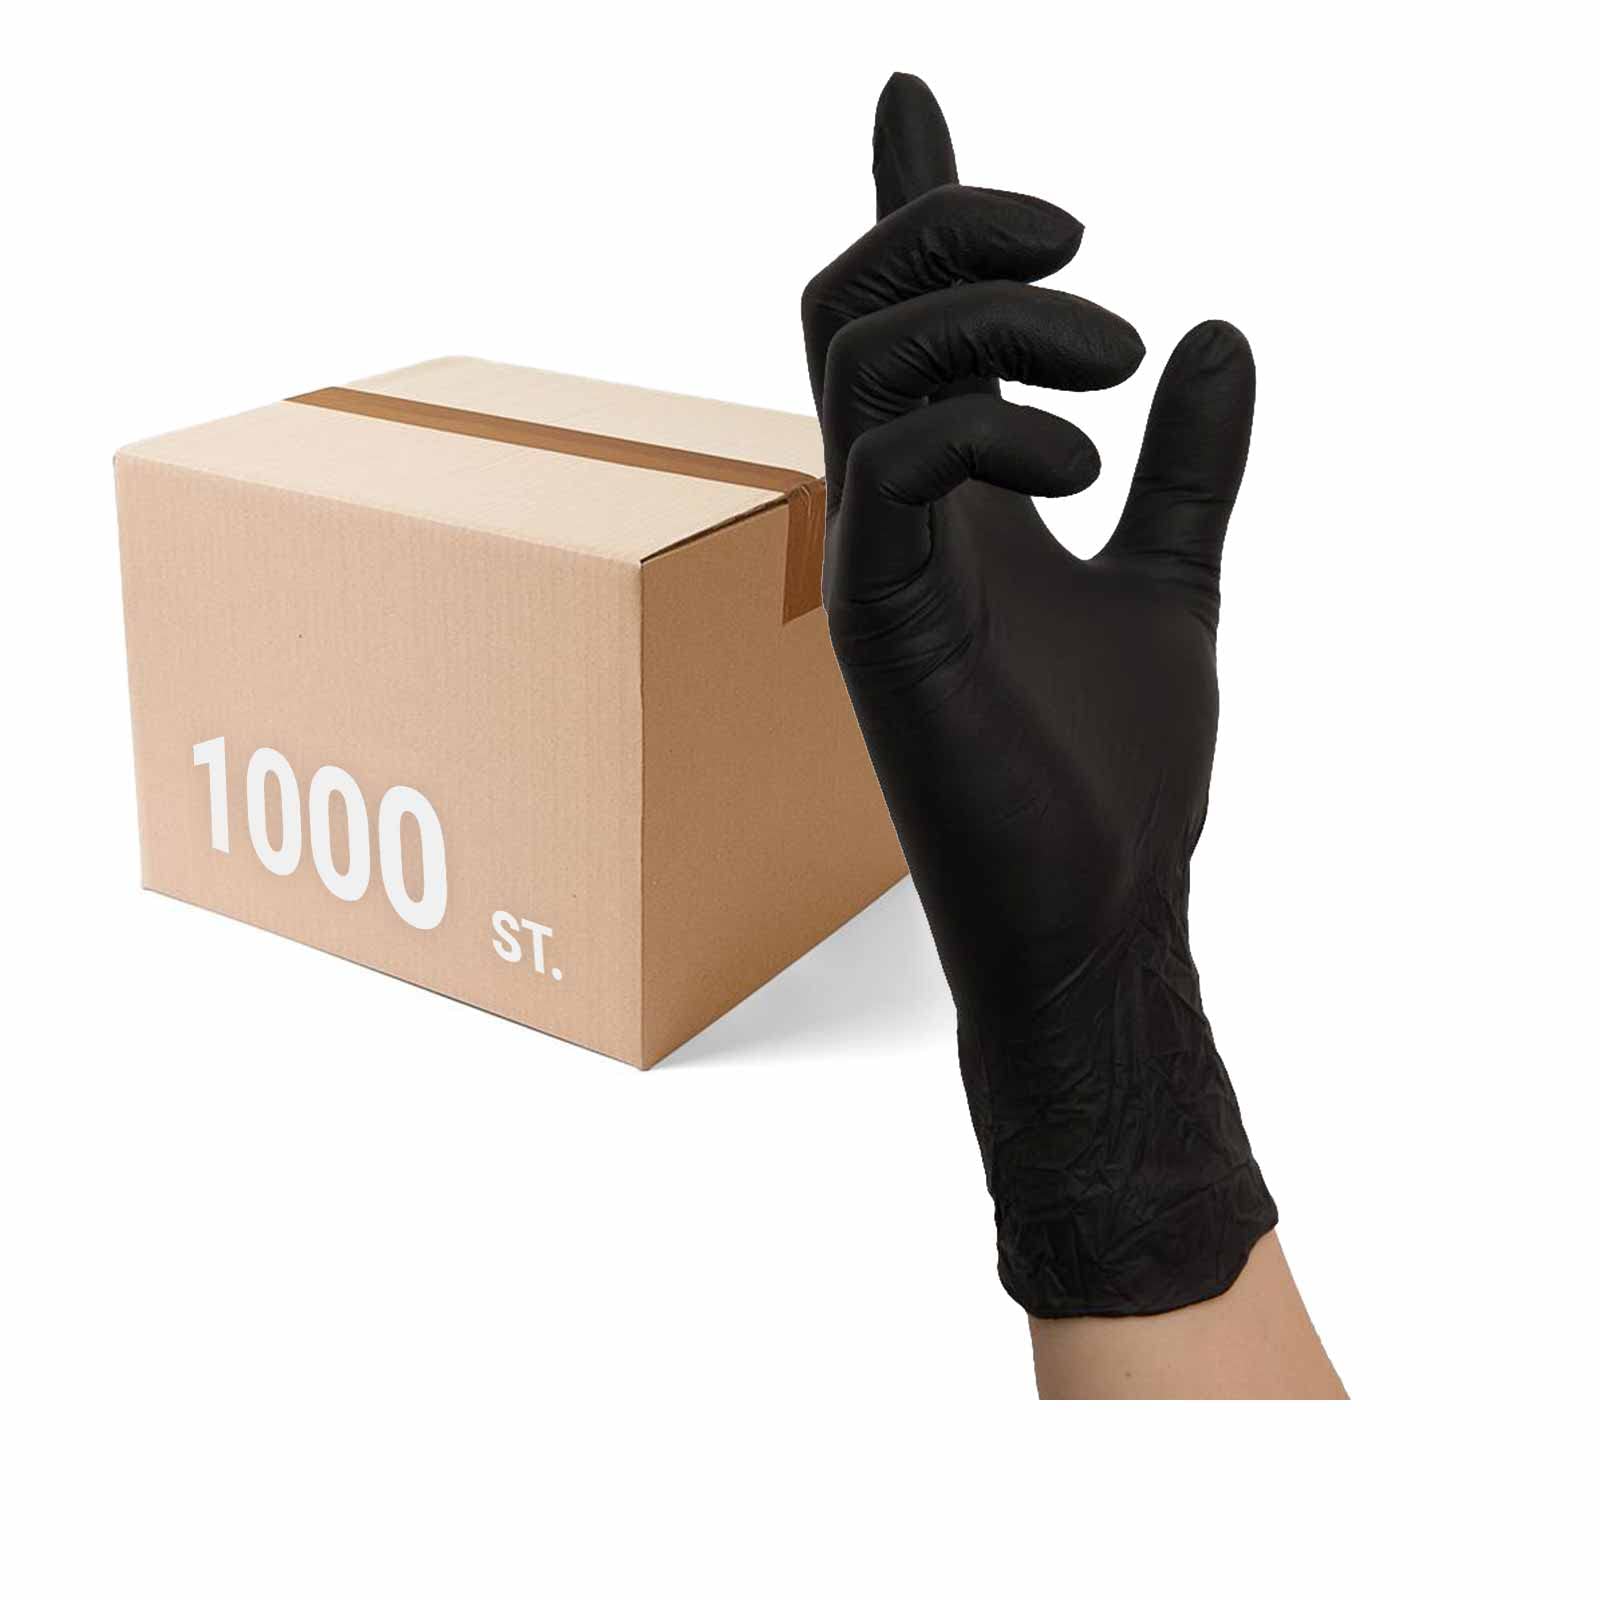 NITRAS Einmalhandschuhe 8320 Black Wave 10x 100 Stück - Einweghandschuhe puderfrei und extrem reißfest, perfekt in einer Box zum Dosieren, Größe:10